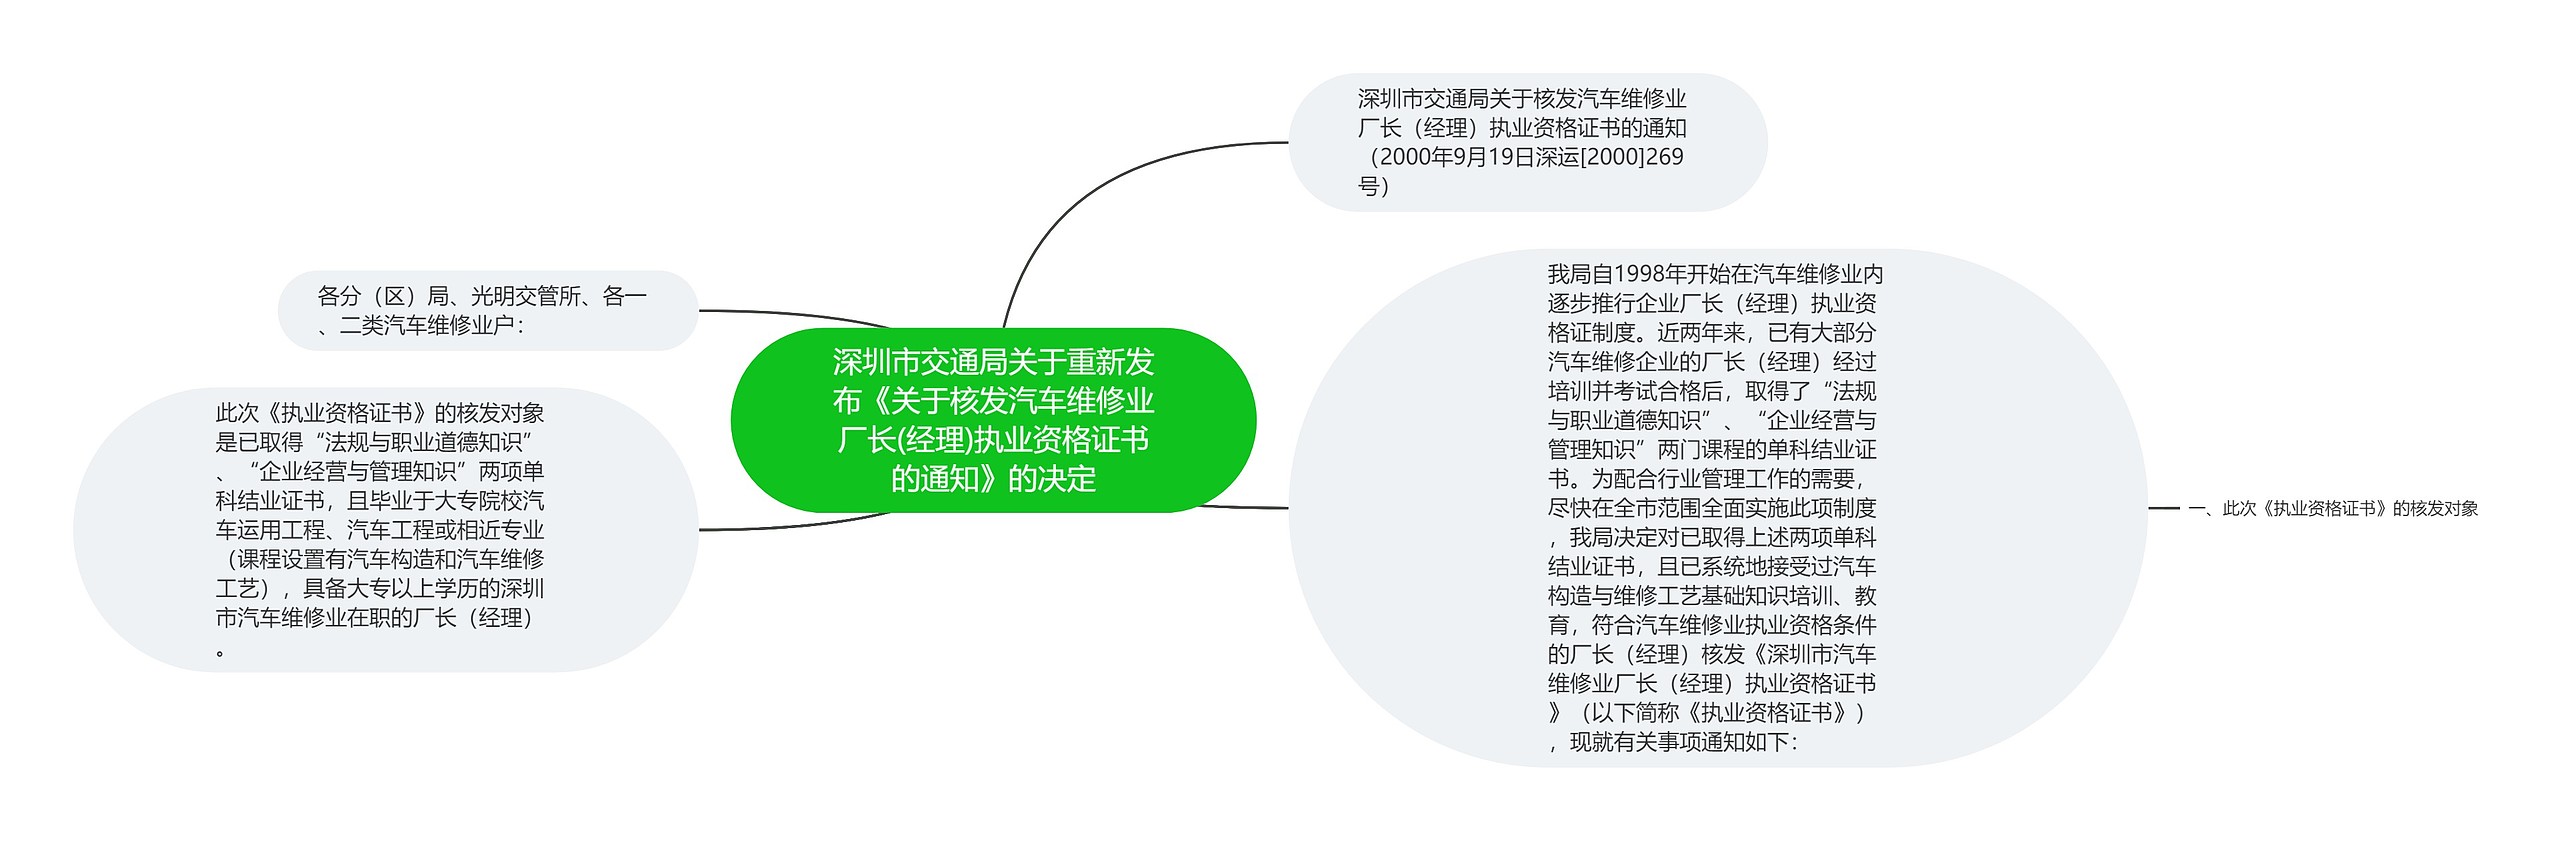 深圳市交通局关于重新发布《关于核发汽车维修业厂长(经理)执业资格证书的通知》的决定思维导图